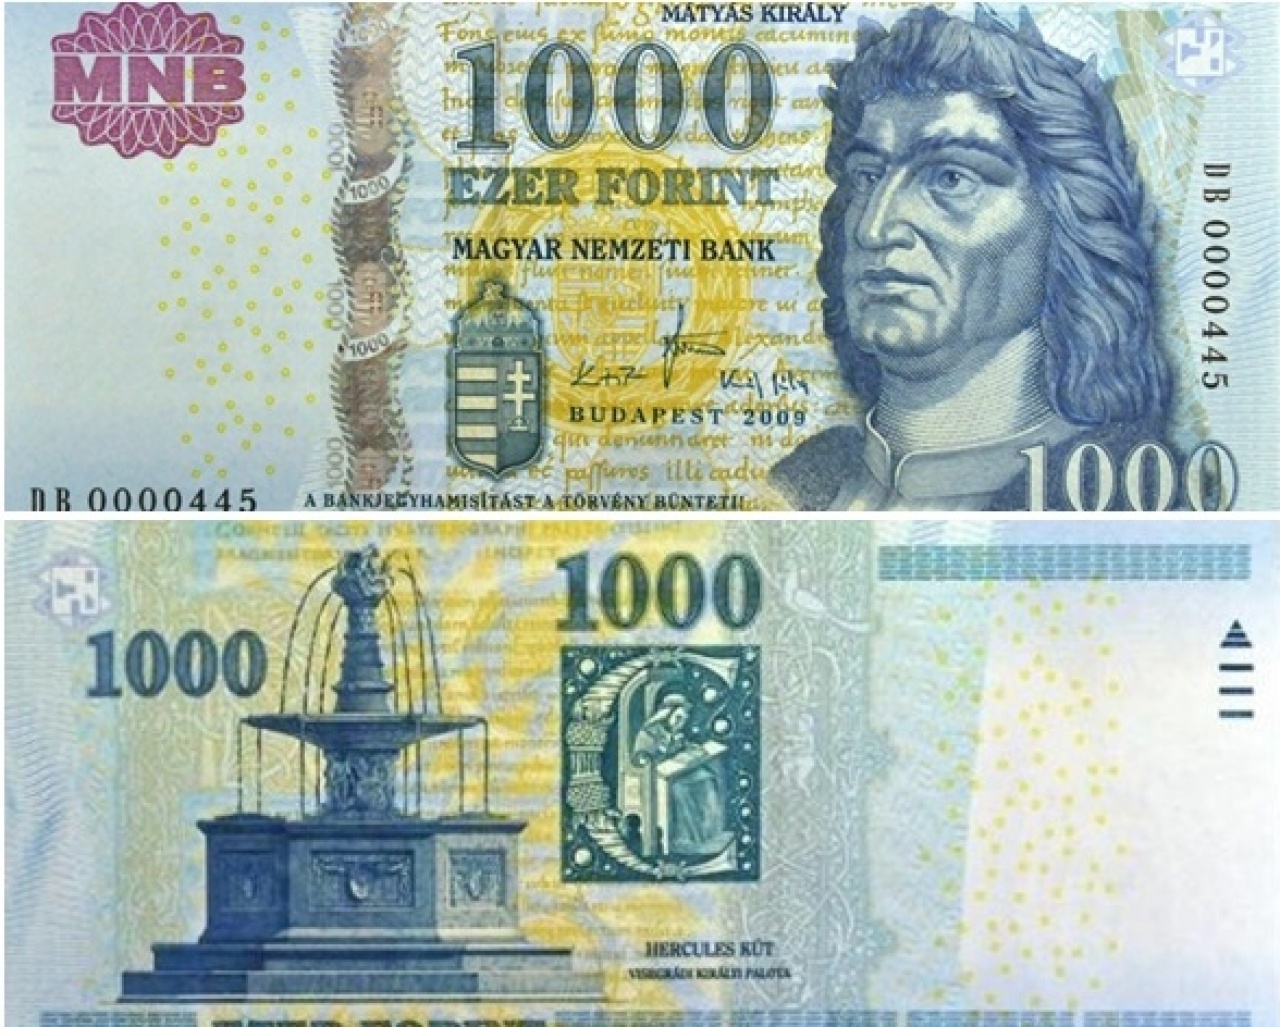 Október végéig lehet fizetni a régi 1000 forintos bankjegyekkel